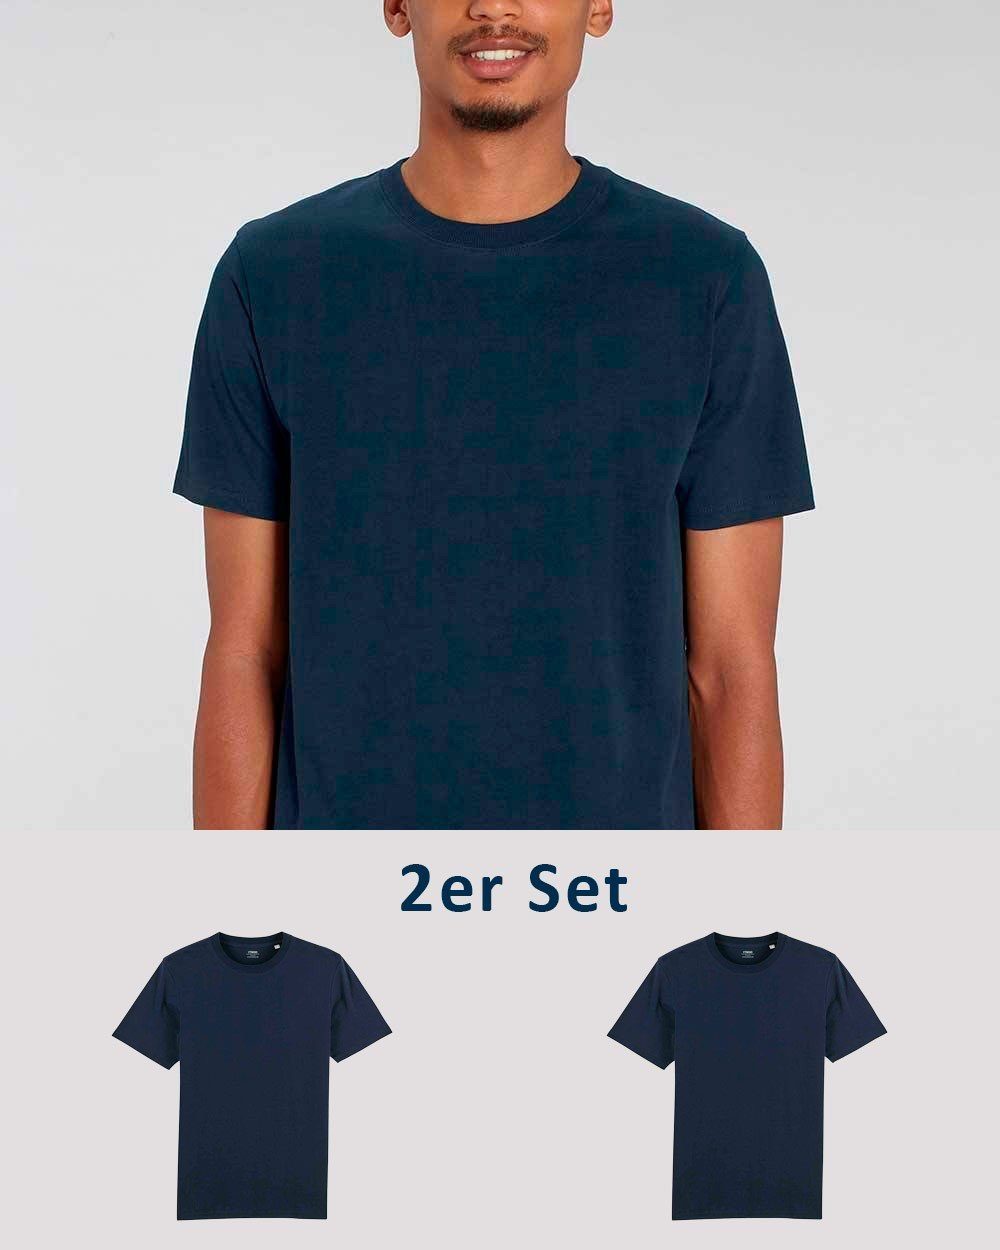 YTWOO T-Shirt 2er Pack, Männer T-Shirt Basic, schwere Bio-Baumwolle, 220g/m²